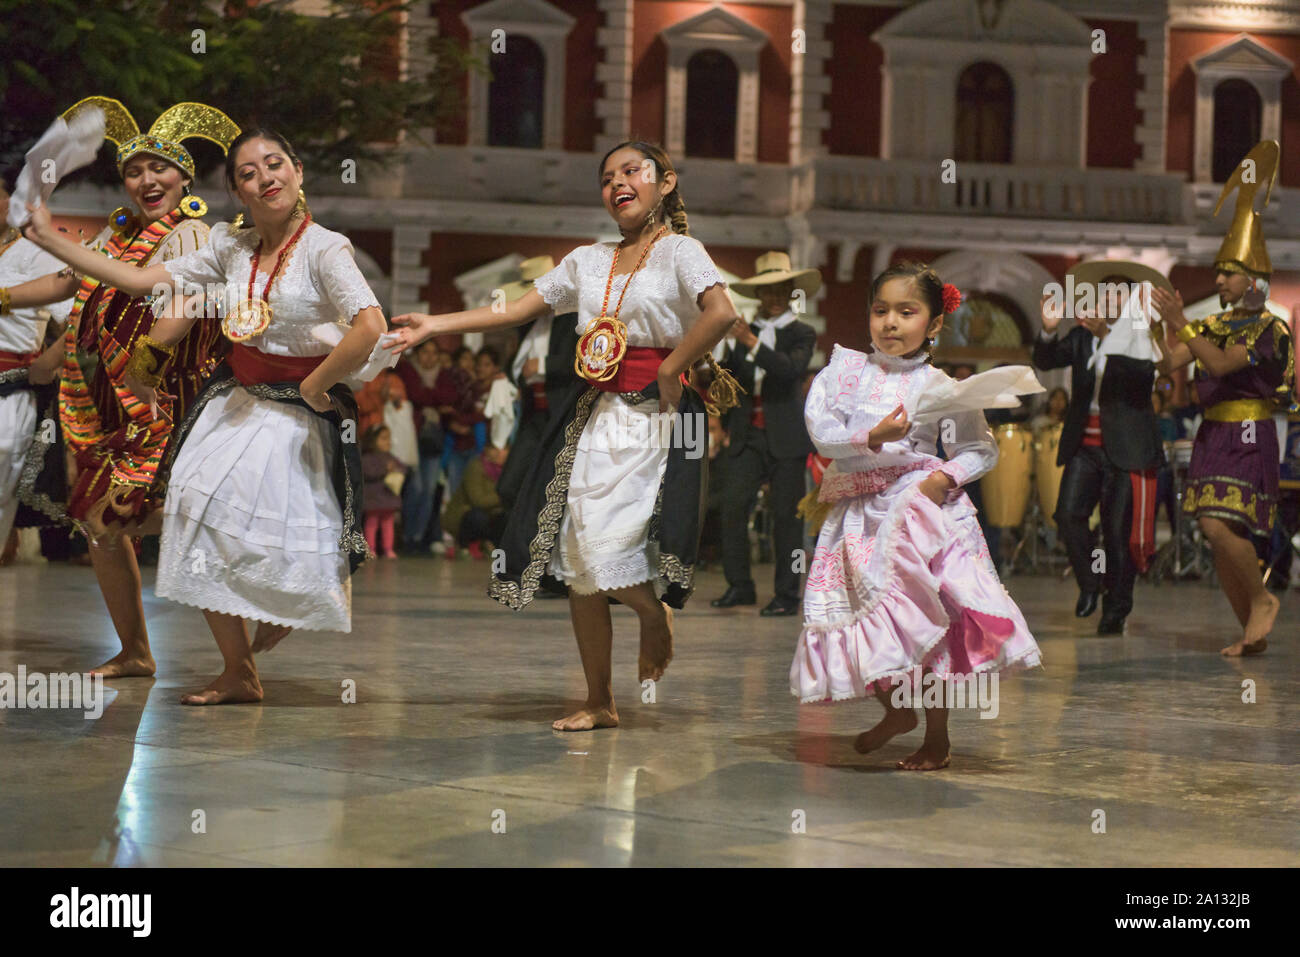 Dancing in the Plaza de Armas in Trujillo, Peru Stock Photo